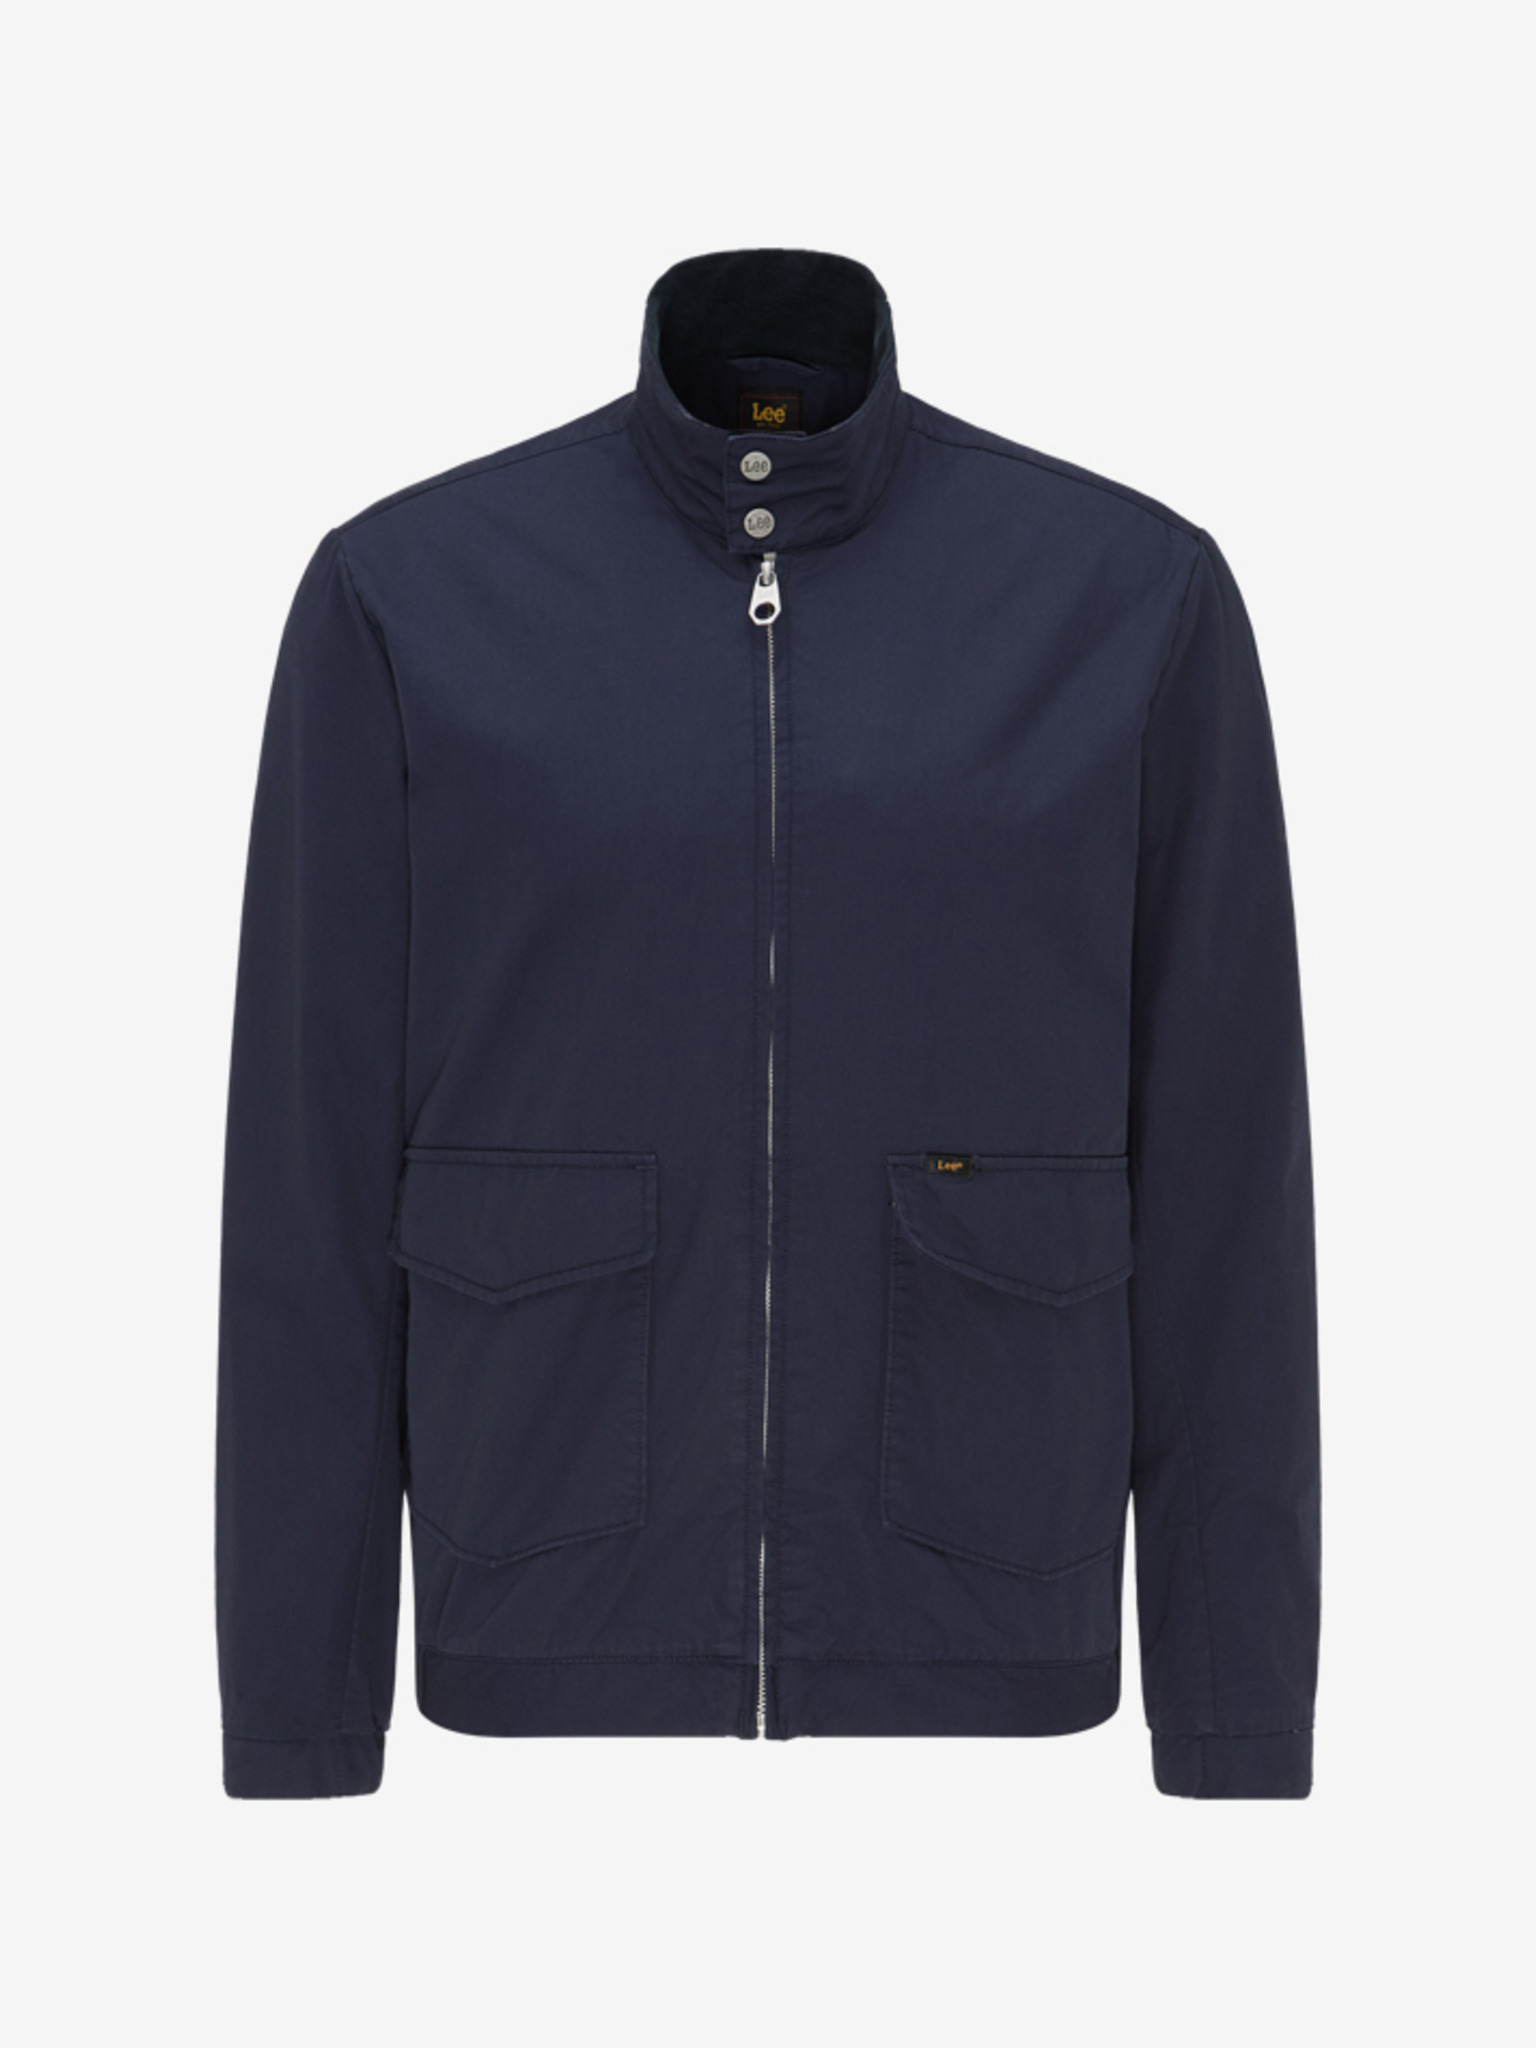 Lee Jeans Harrington Jacket – jackets & coats – shop at Booztlet